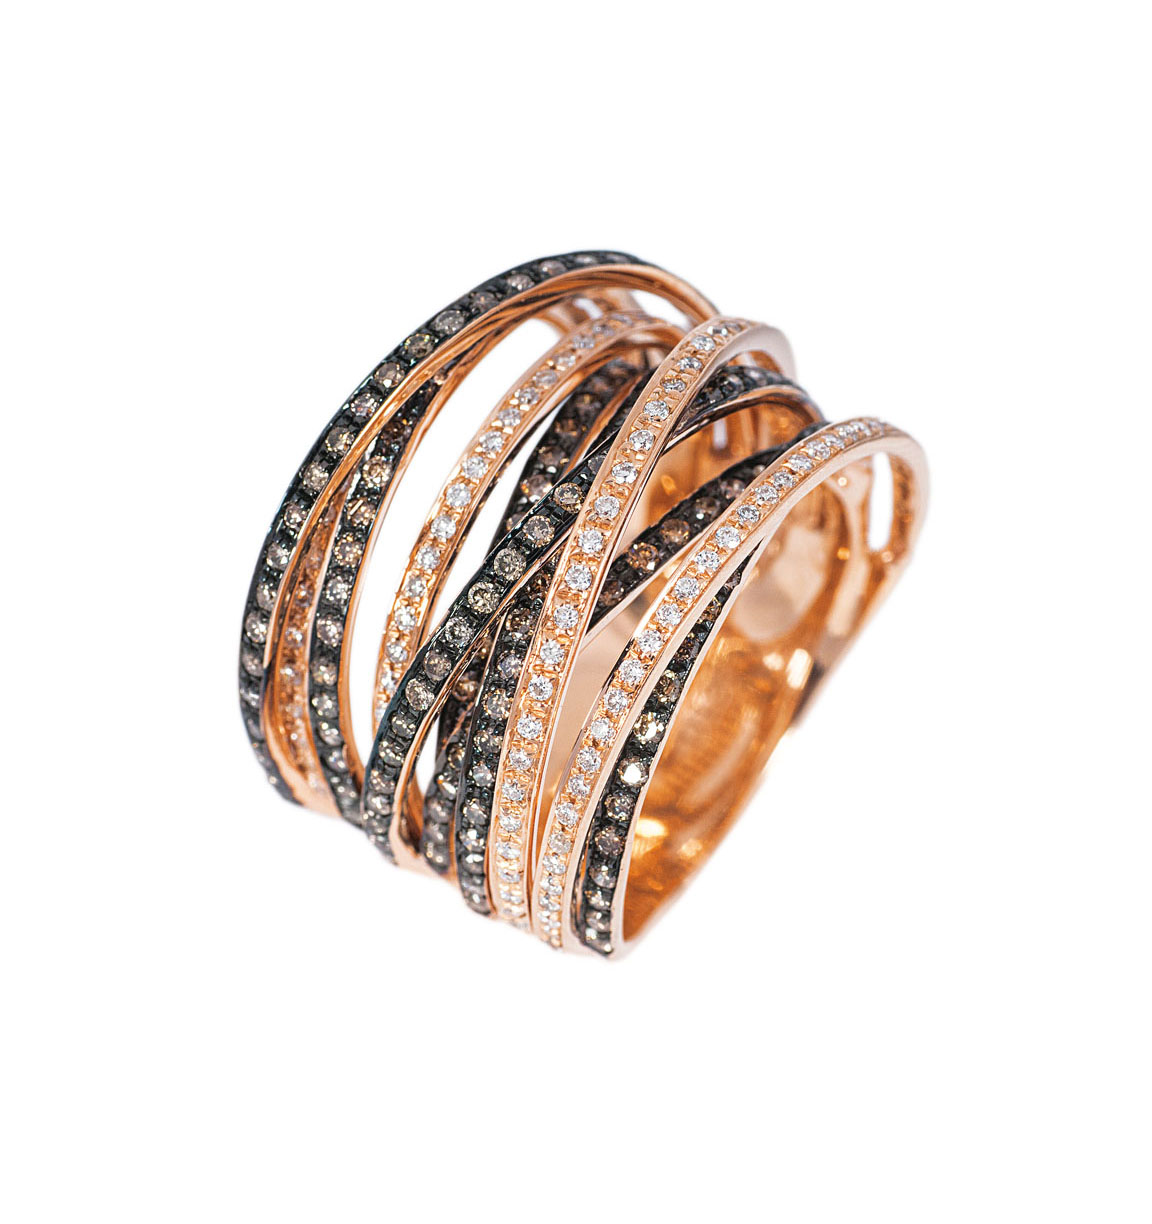 A modern precious stone ring with multicolour diamonds